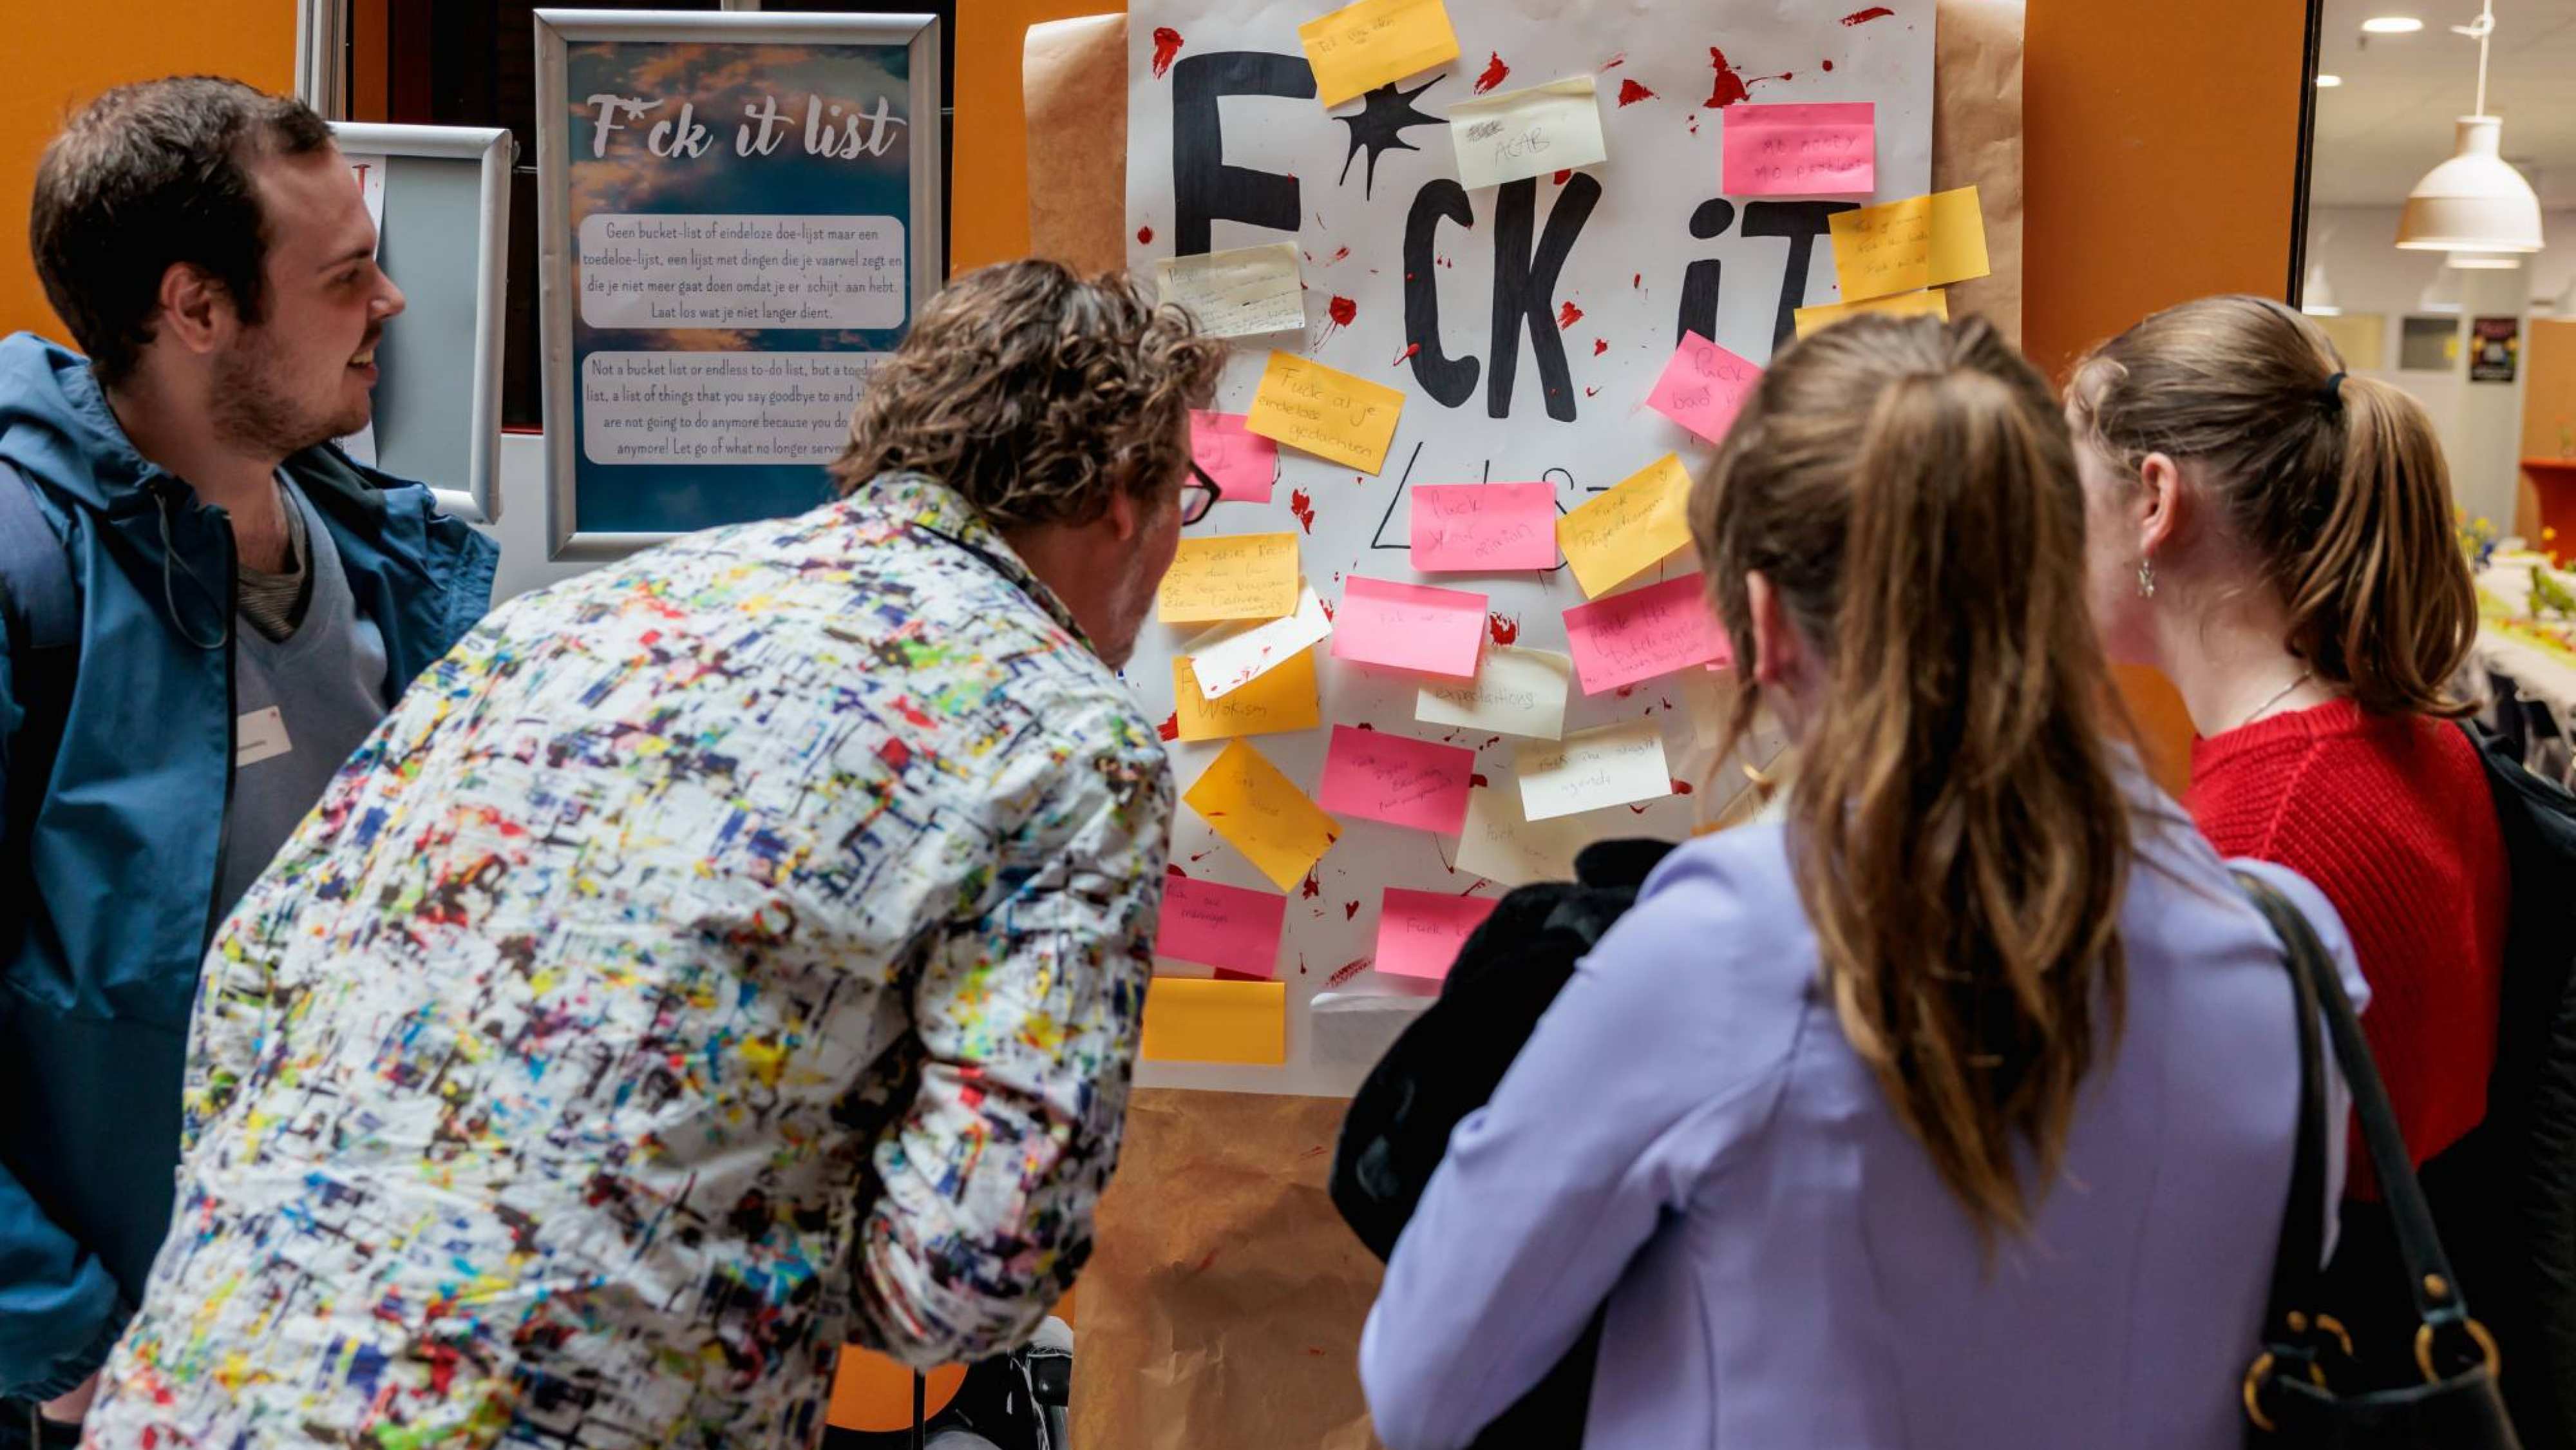 Deelnemers van festival LOS bekijken welke boodschappen zijn geschreven op de poster op een oranje muur